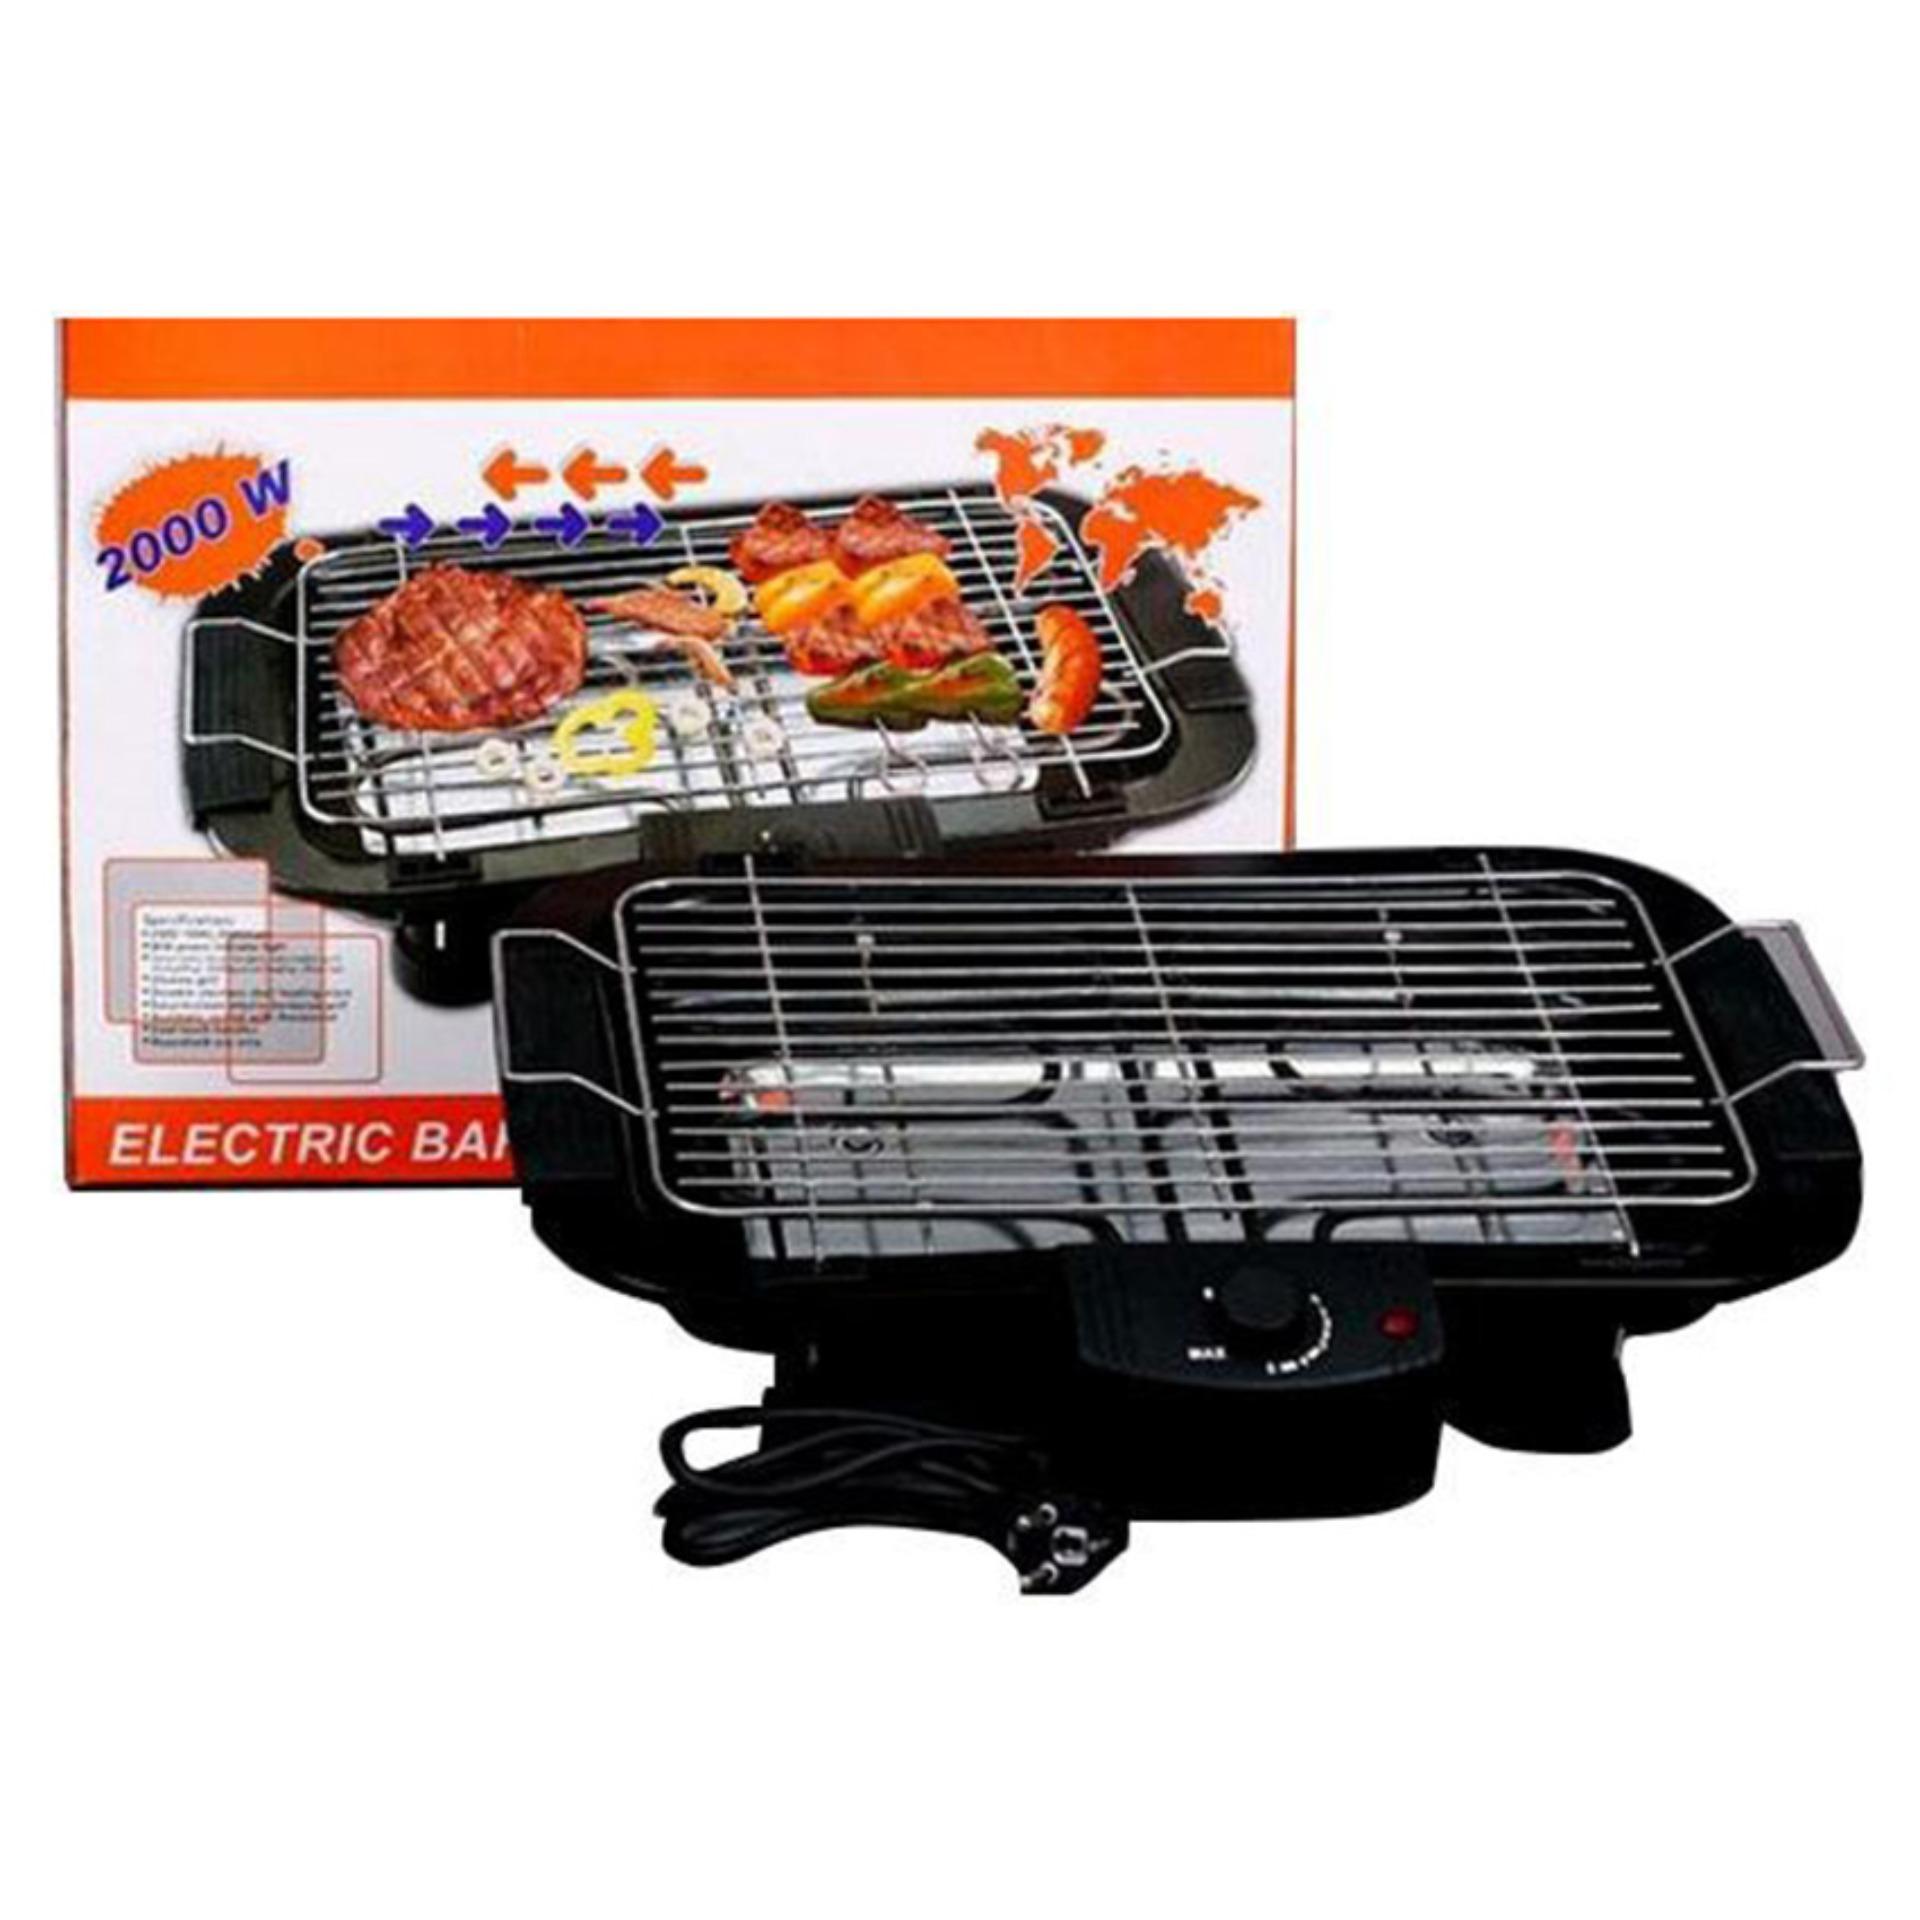 Bếp nướng điện cao cấp không khói Electric barbecue grill 2000W - xả hàng sập giá